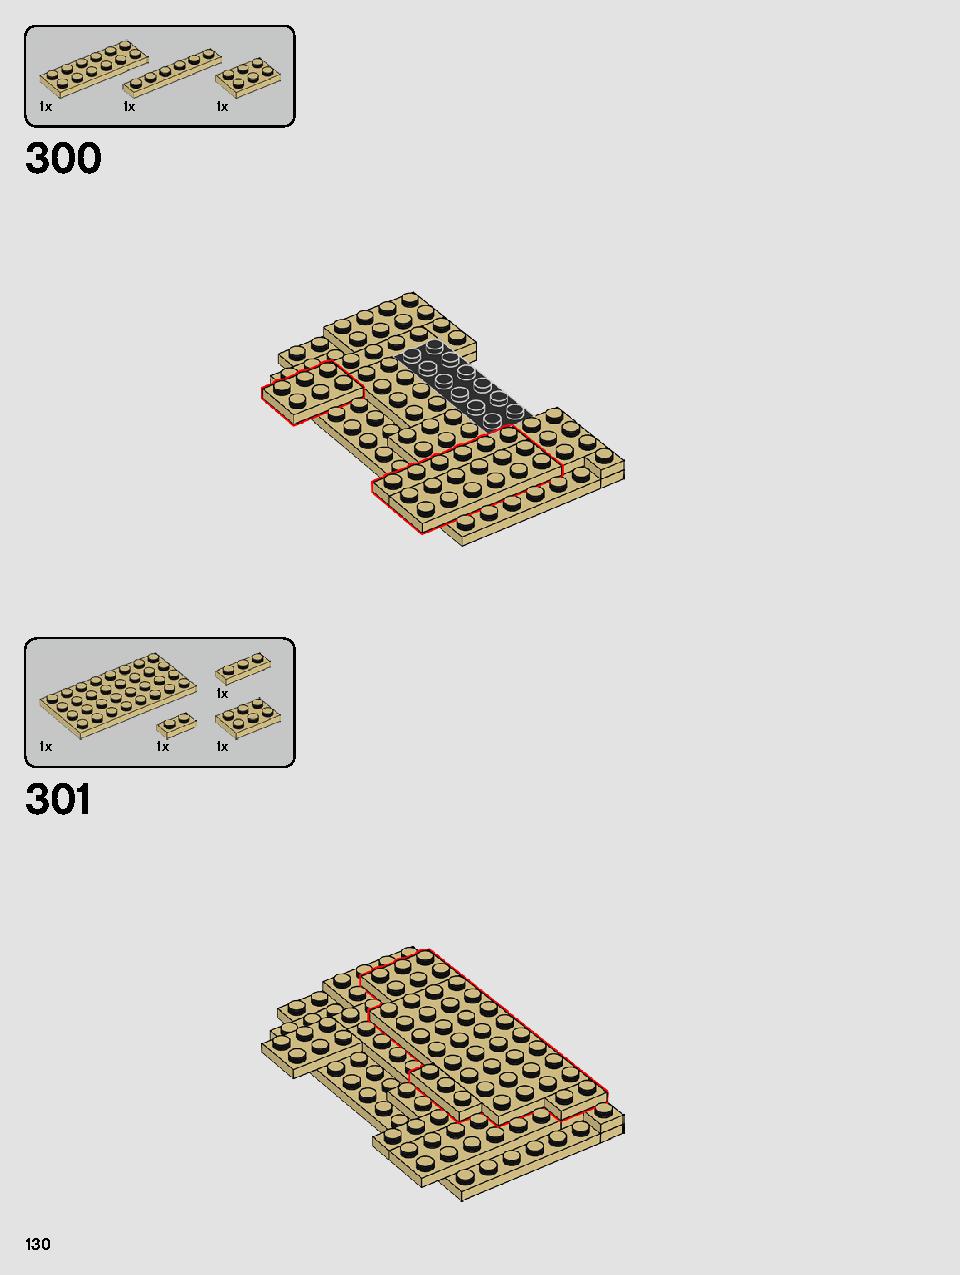 ヨーダ™ 75255 レゴの商品情報 レゴの説明書・組立方法 130 page